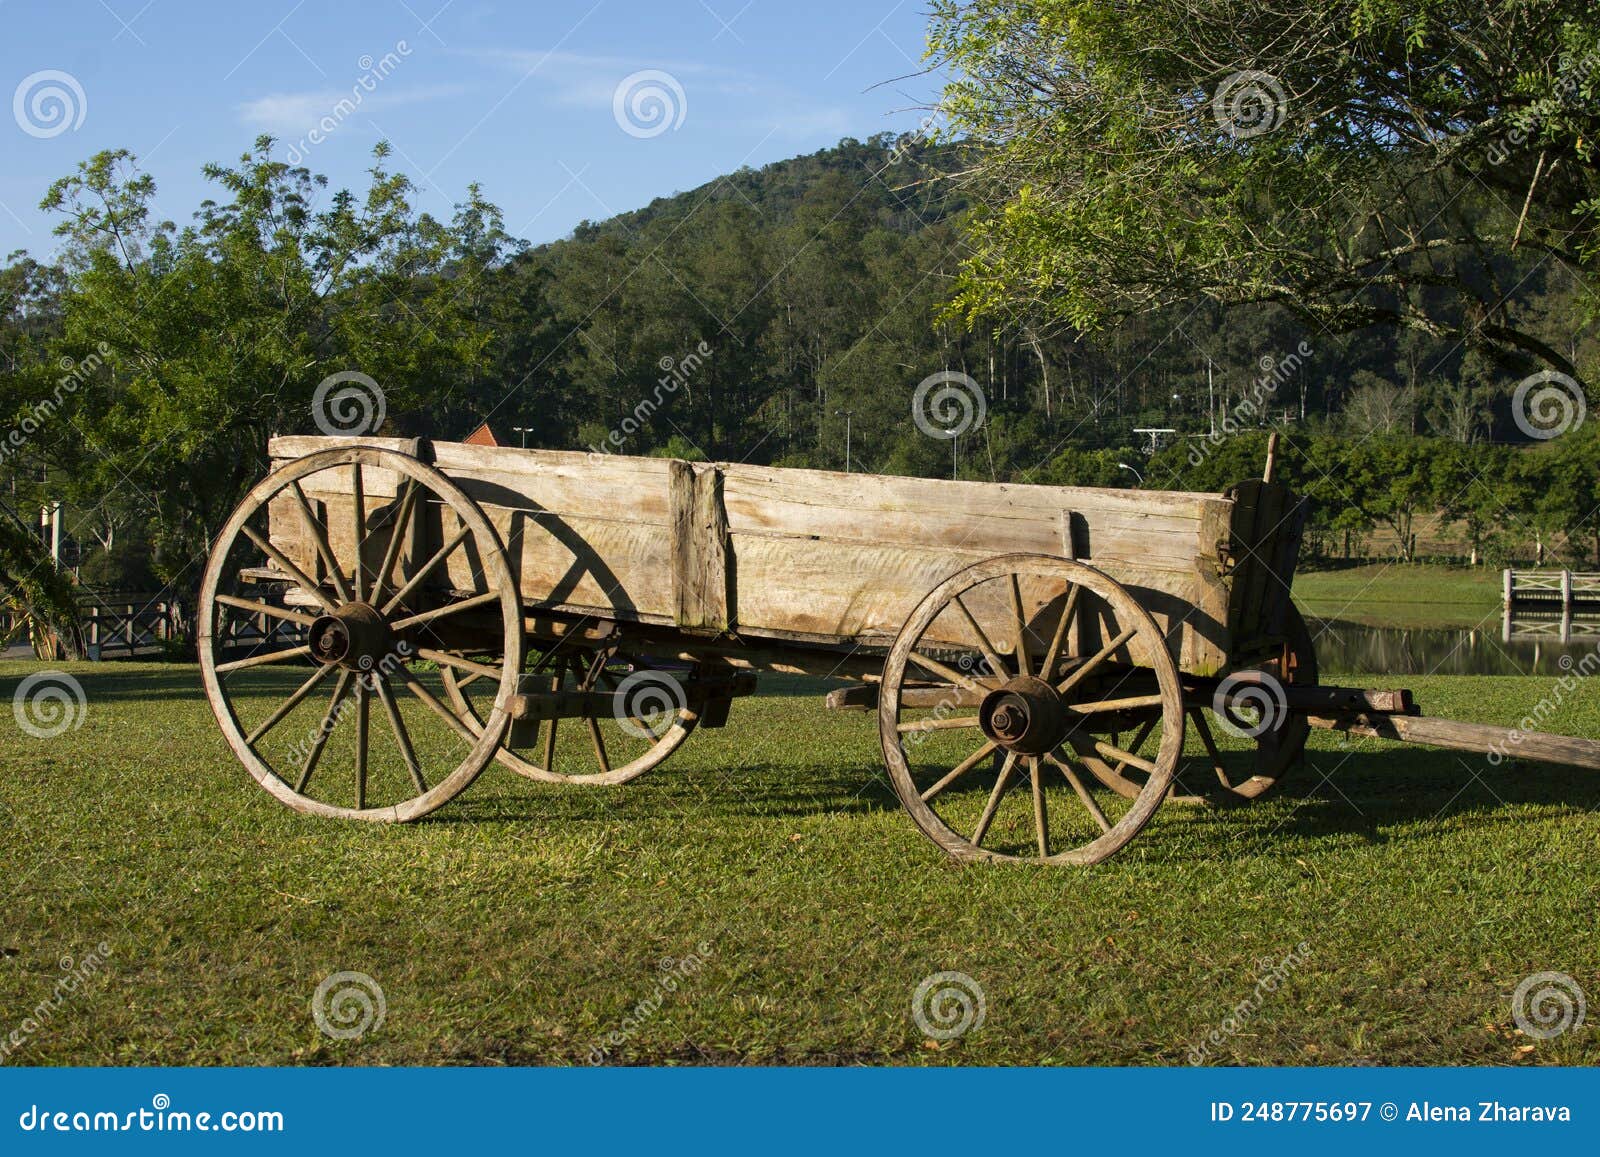 an old wooden cart on a fazenda in brazil. wooden cart